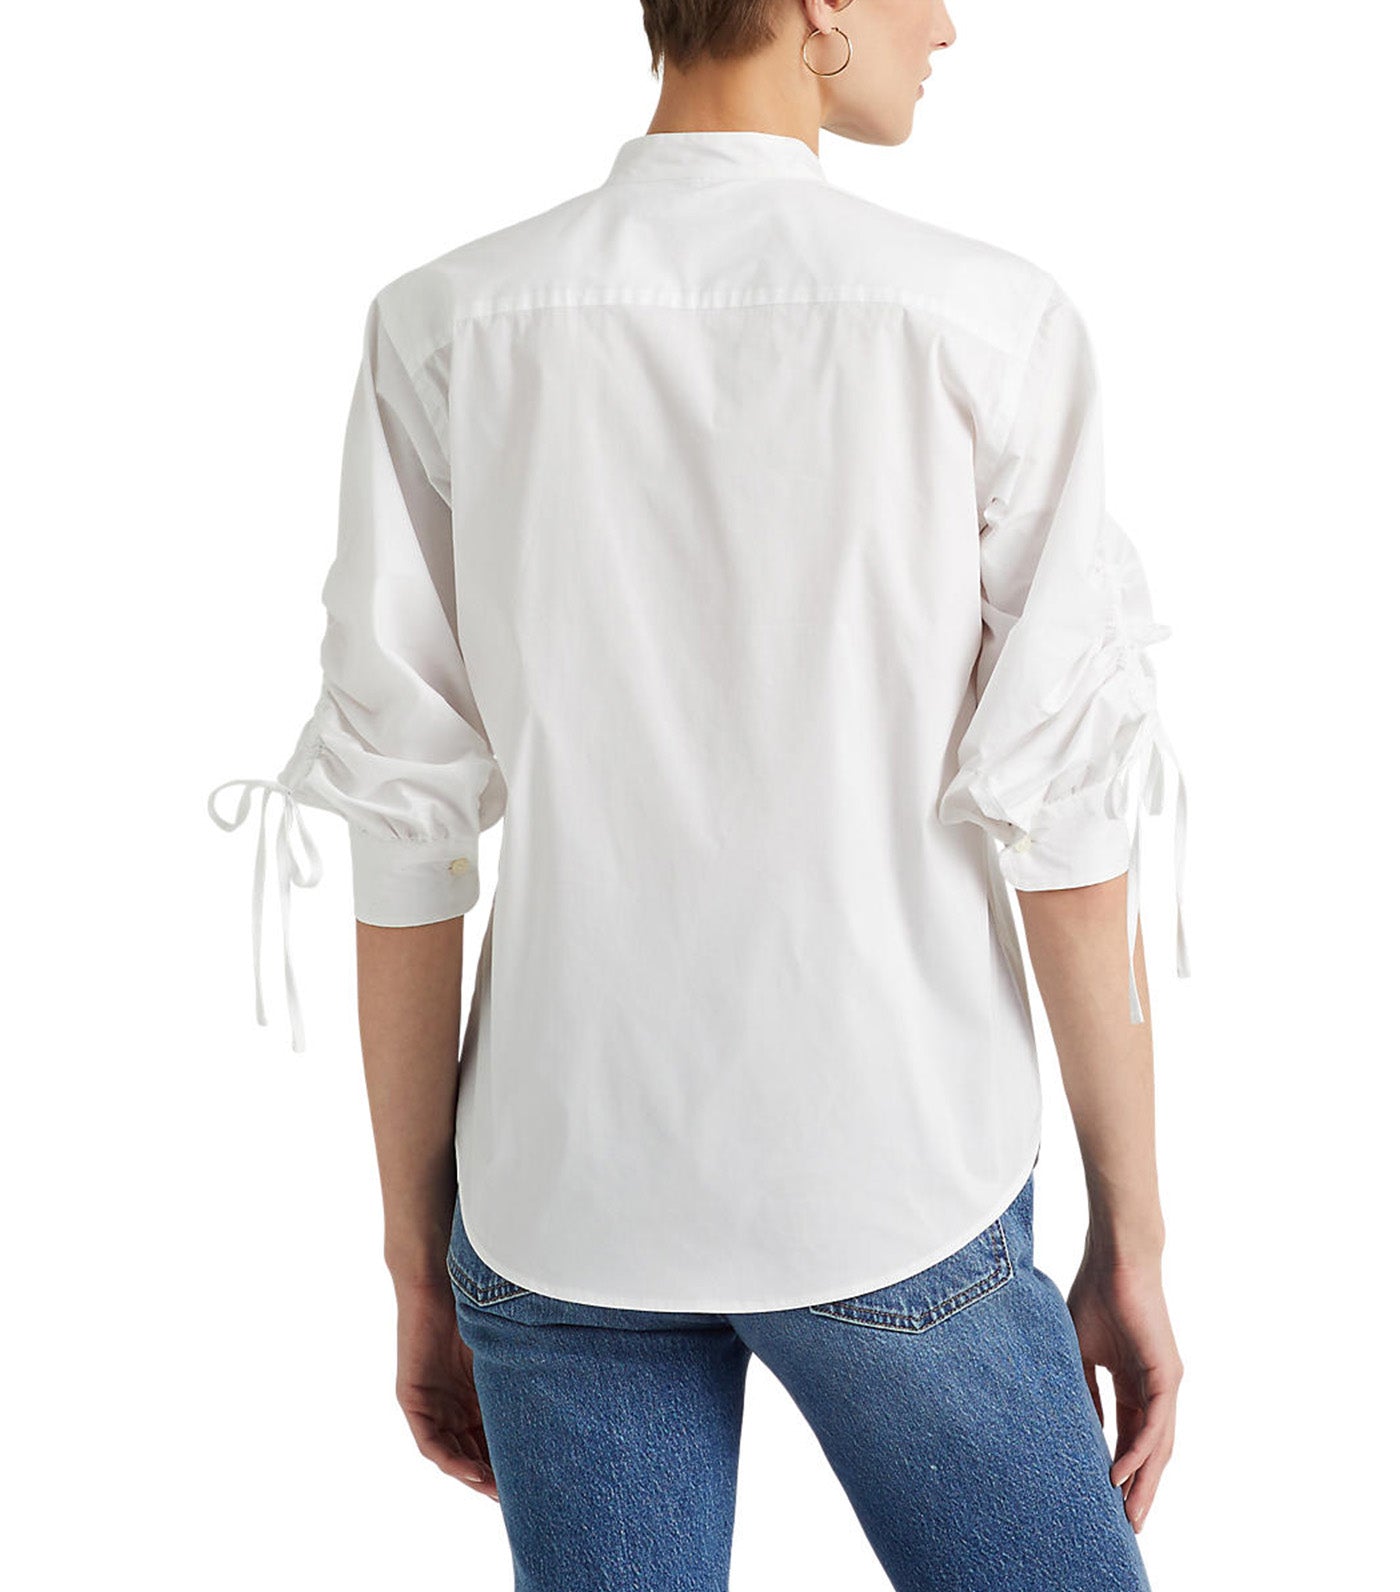 Women's Cotton-Blend Shirt White